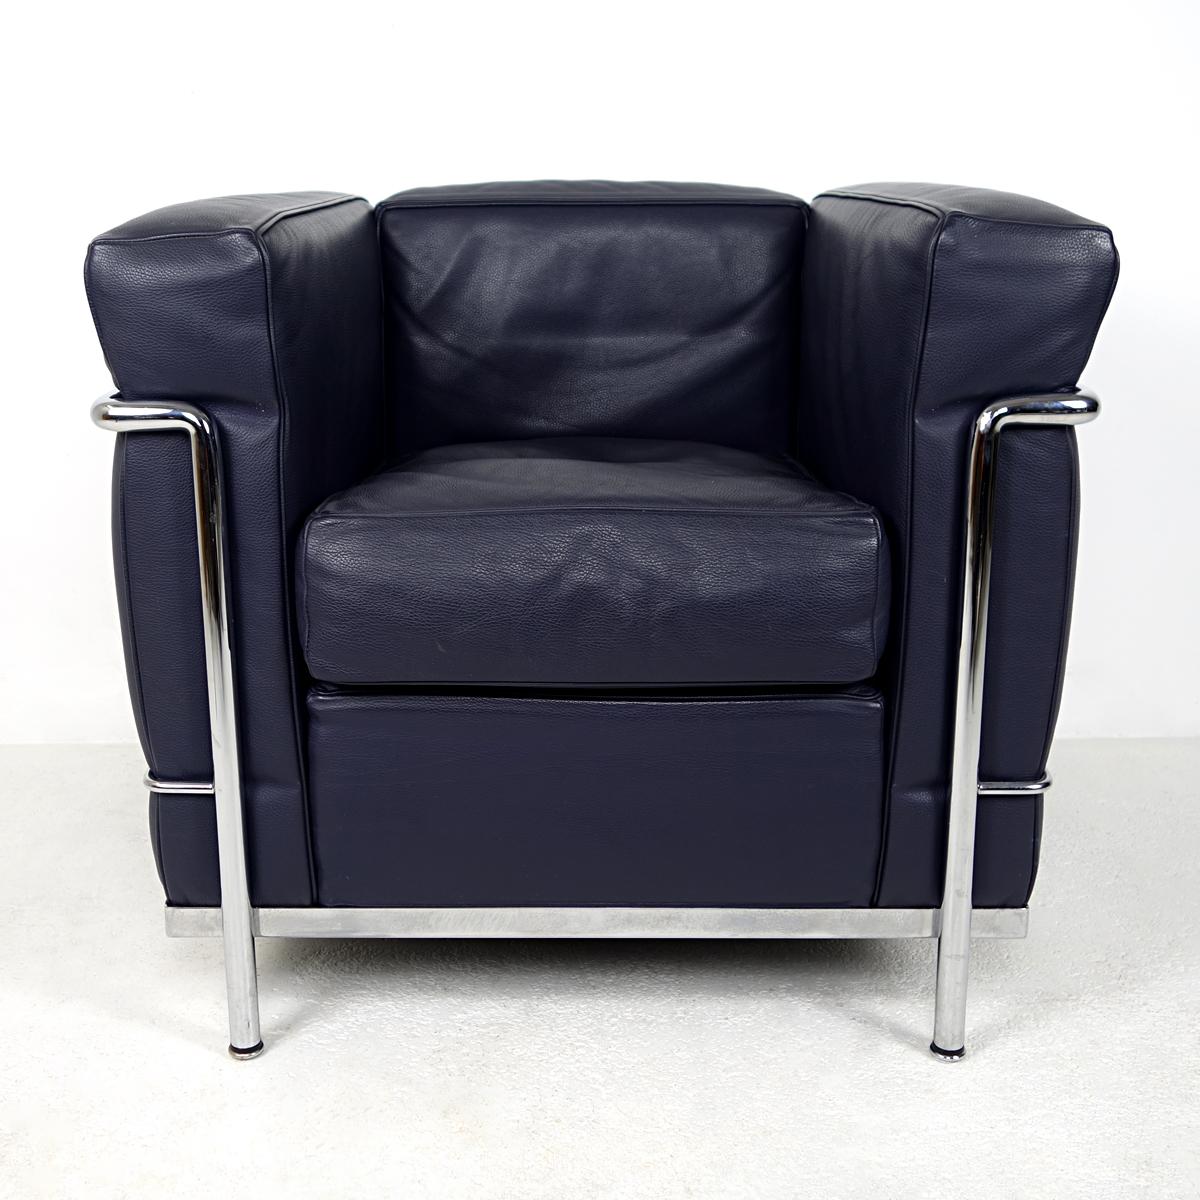 Sessel LC2 Petit Modèle mit poliertem Chromgestell und separaten, tiefblauen Lederkissen, LCX-Leder, die exklusivere Version.
Der LC2 wurde 1928 von Le Corbusier und Charlotte Perriand entworfen und ist seither der Archetyp des modernistischen